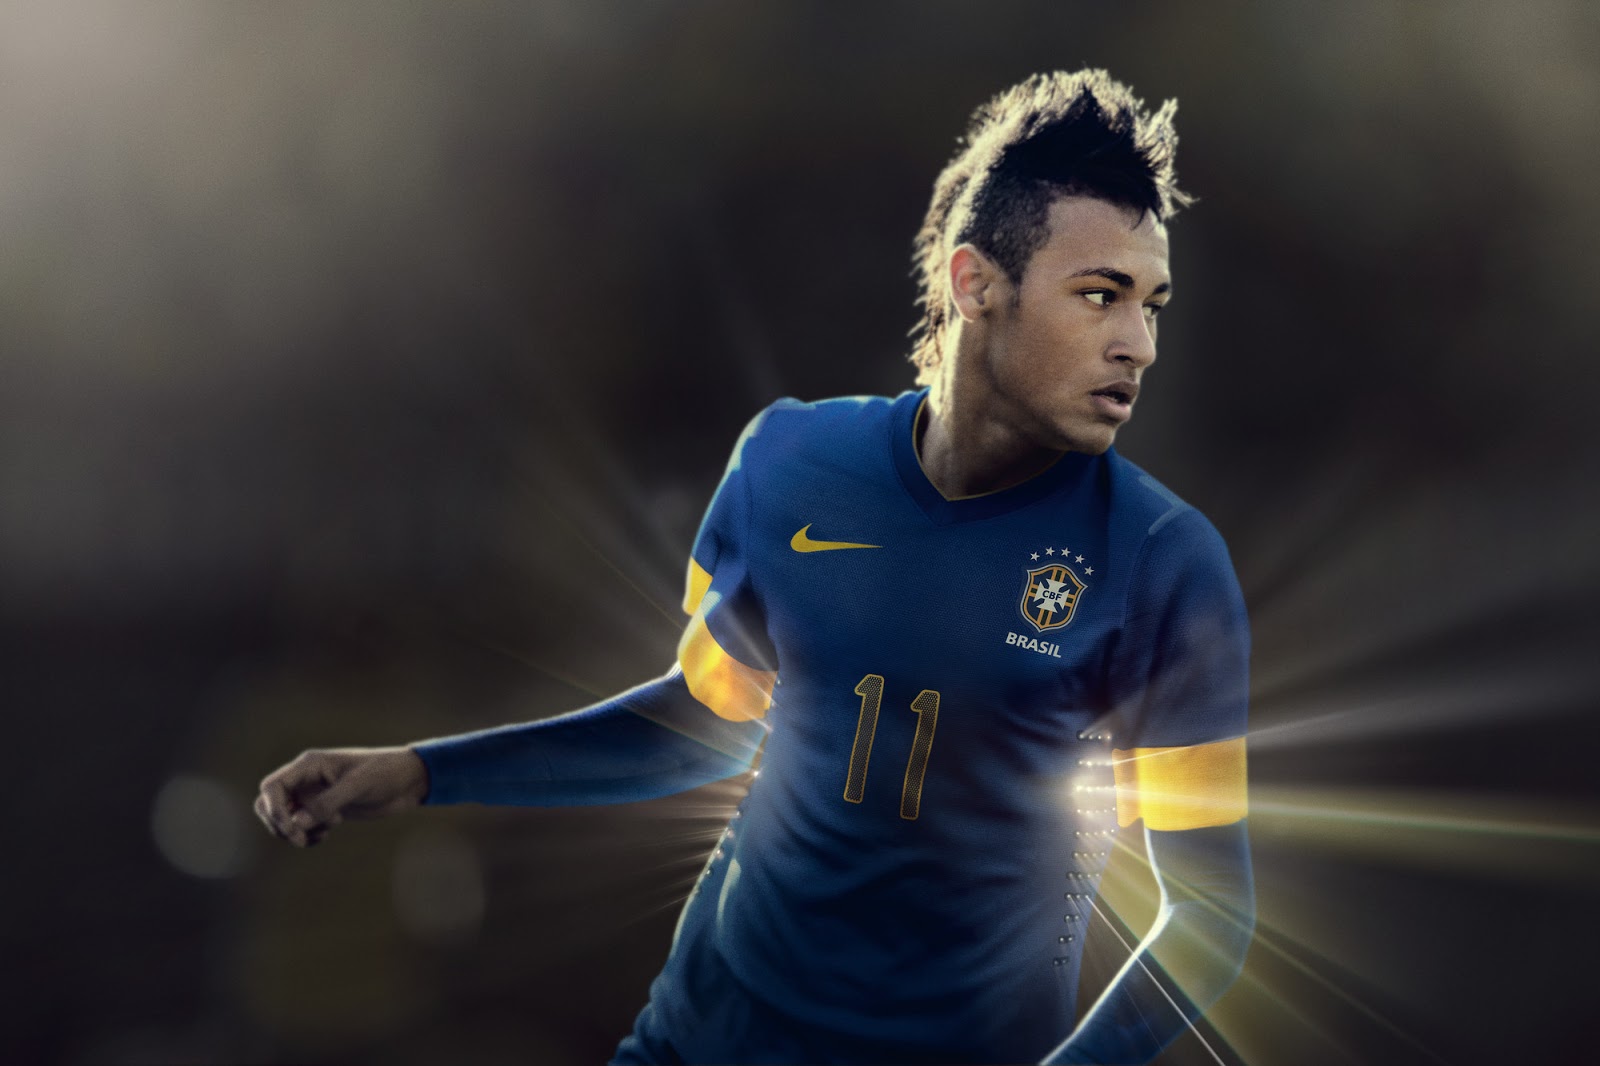 neymar best wallpaper,football player,player,soccer player,team sport,football